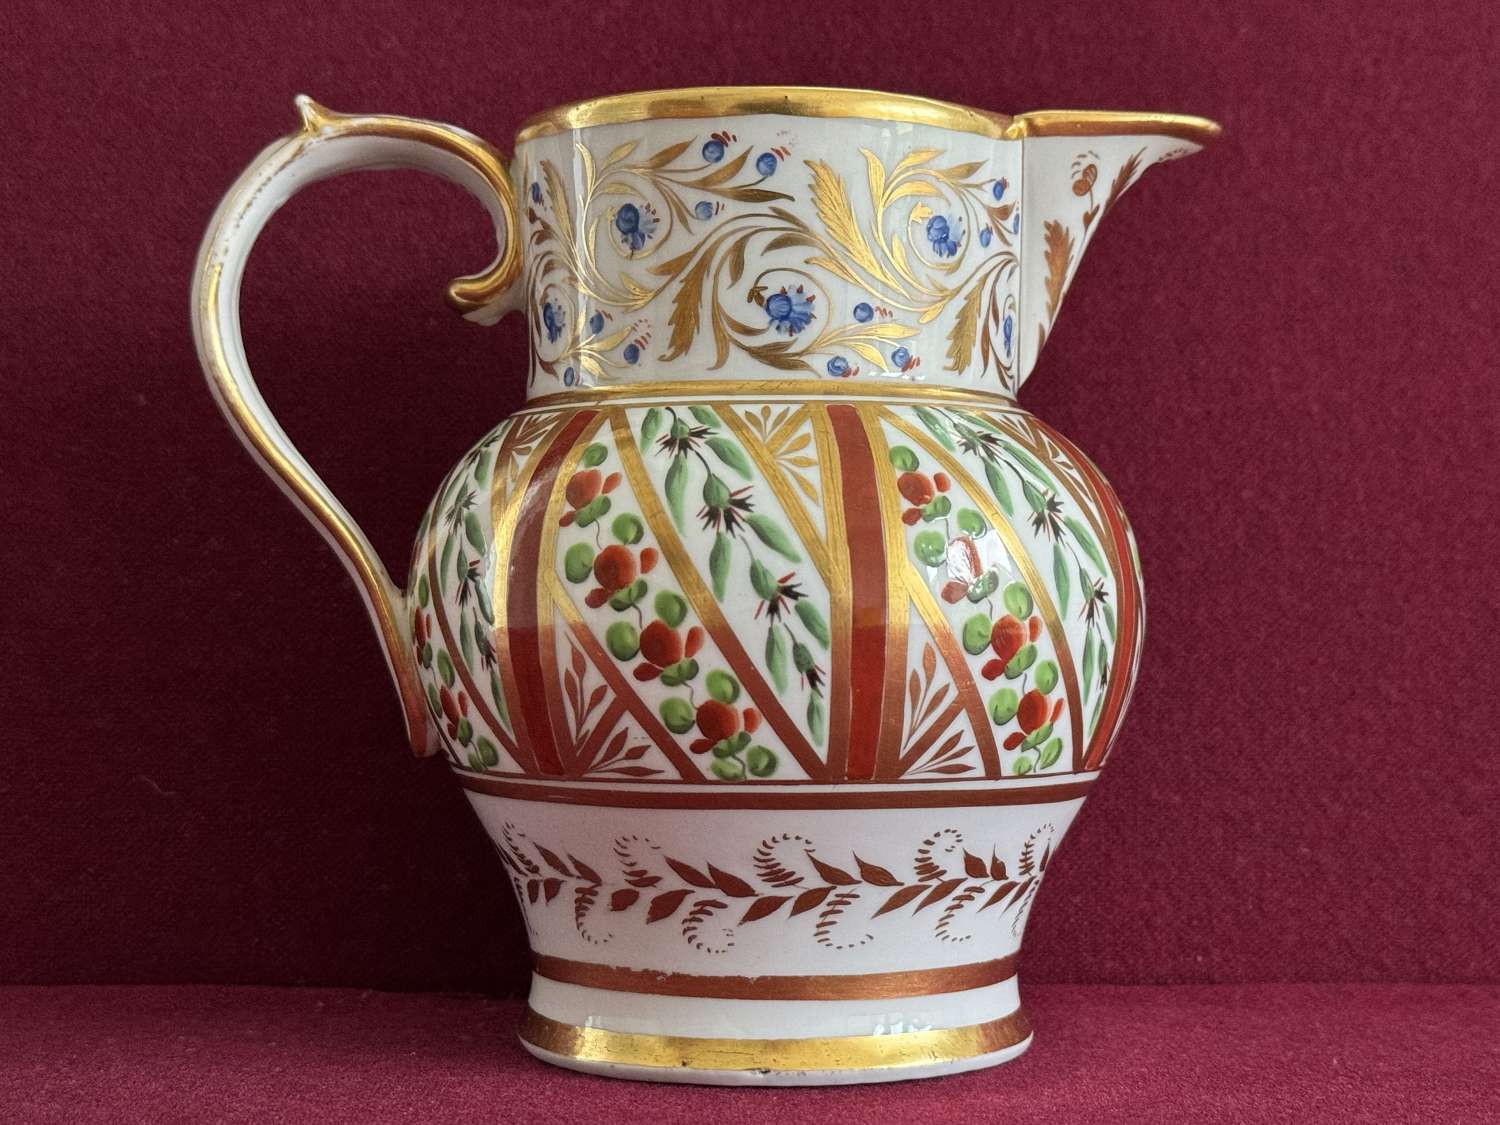 A John Rose Coalport Porcelain Jug c.1800-1810